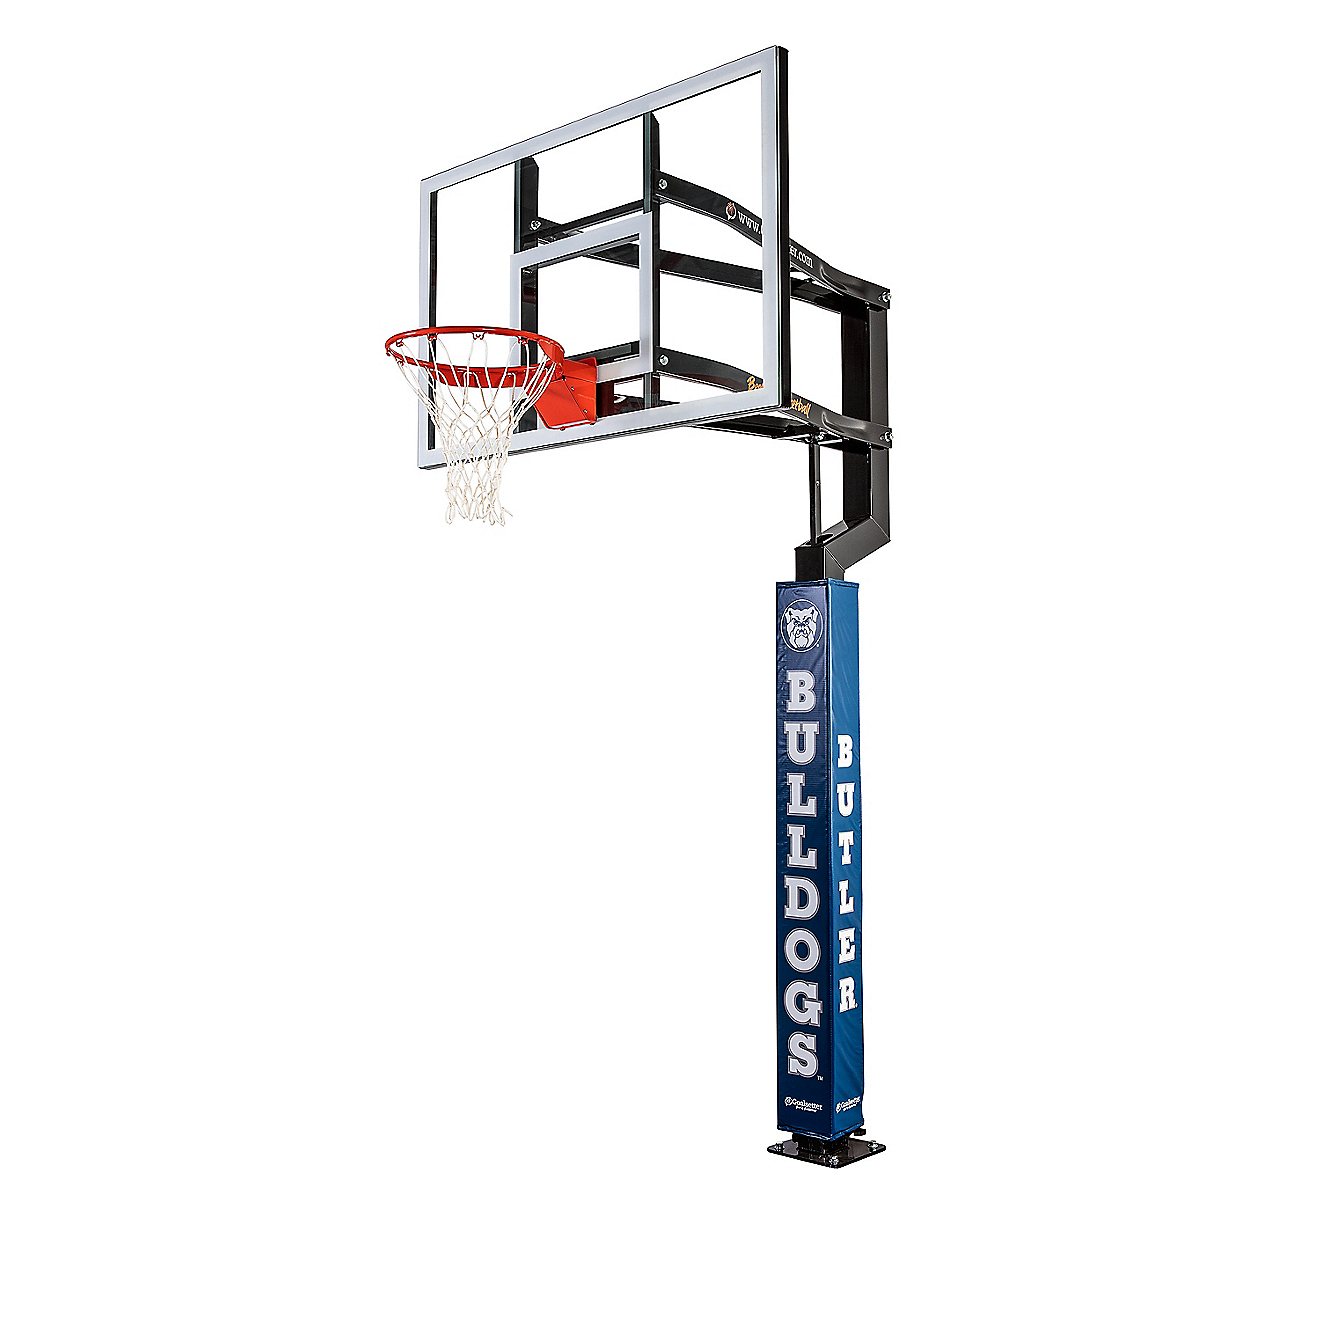 Goalsetter Butler University Basketball Hoop Pole Padding                                                                        - view number 1